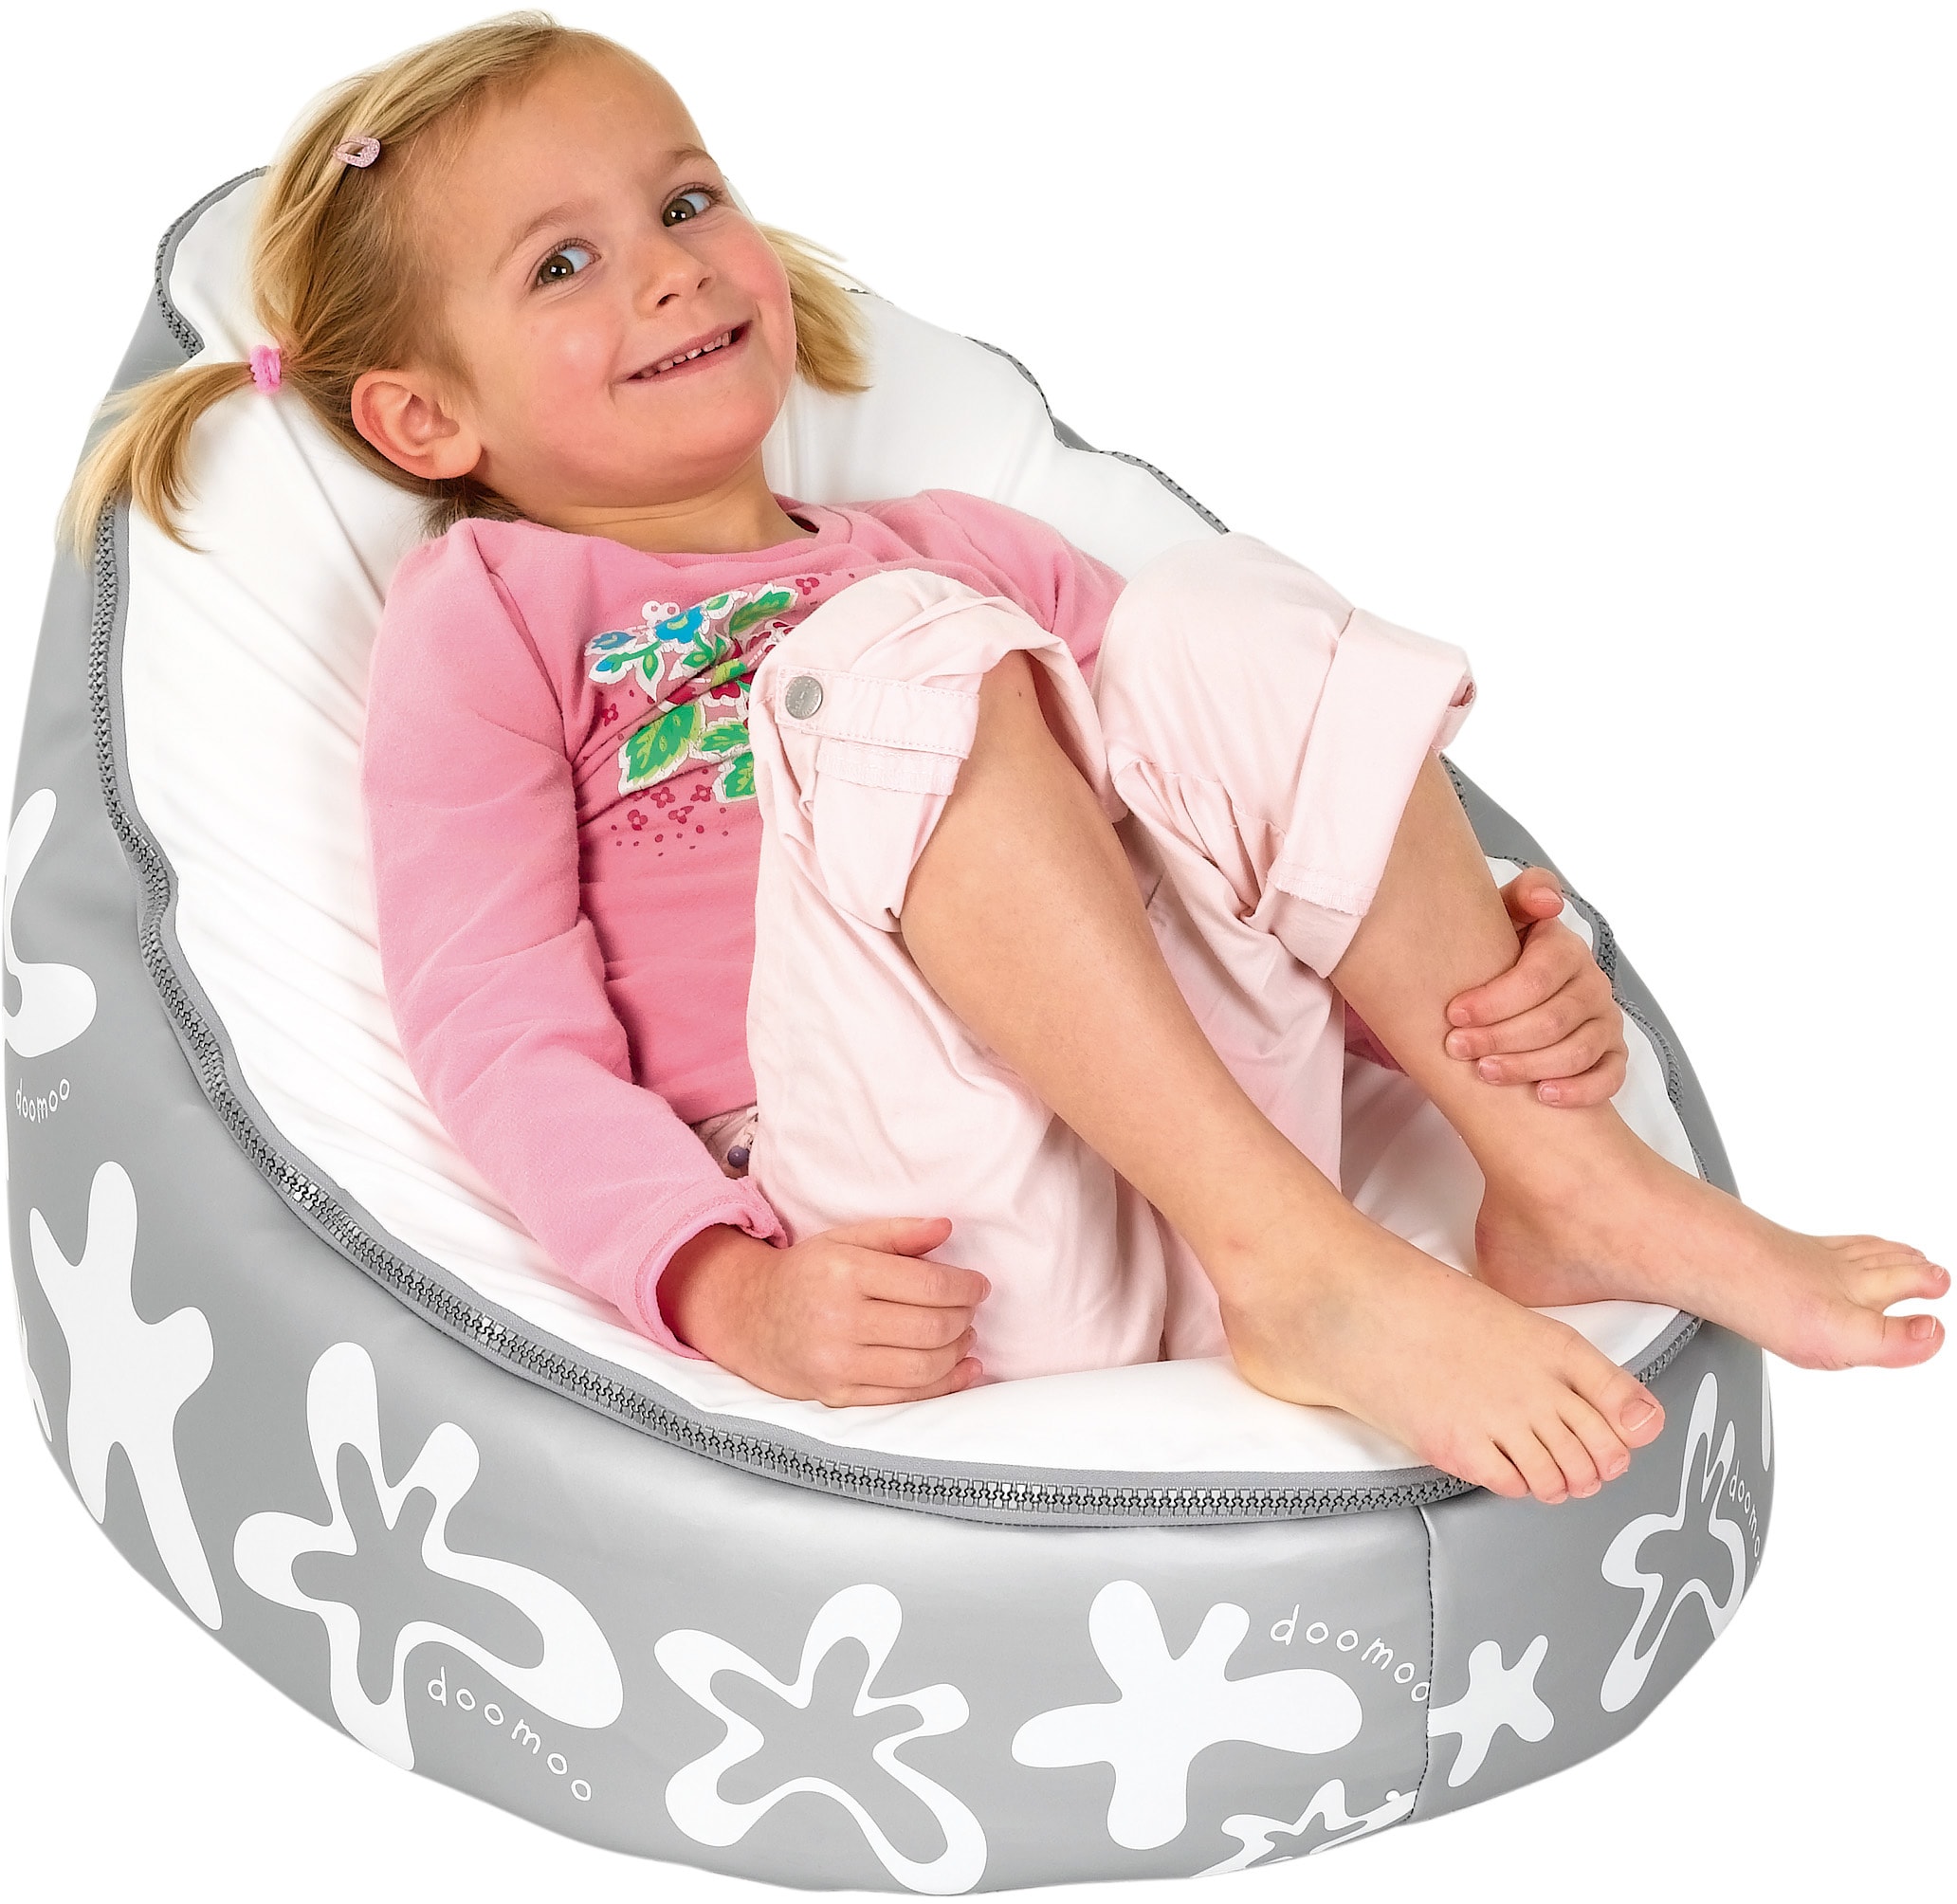 Transat pouf pour bébé ultra confort - doomoo Nid®